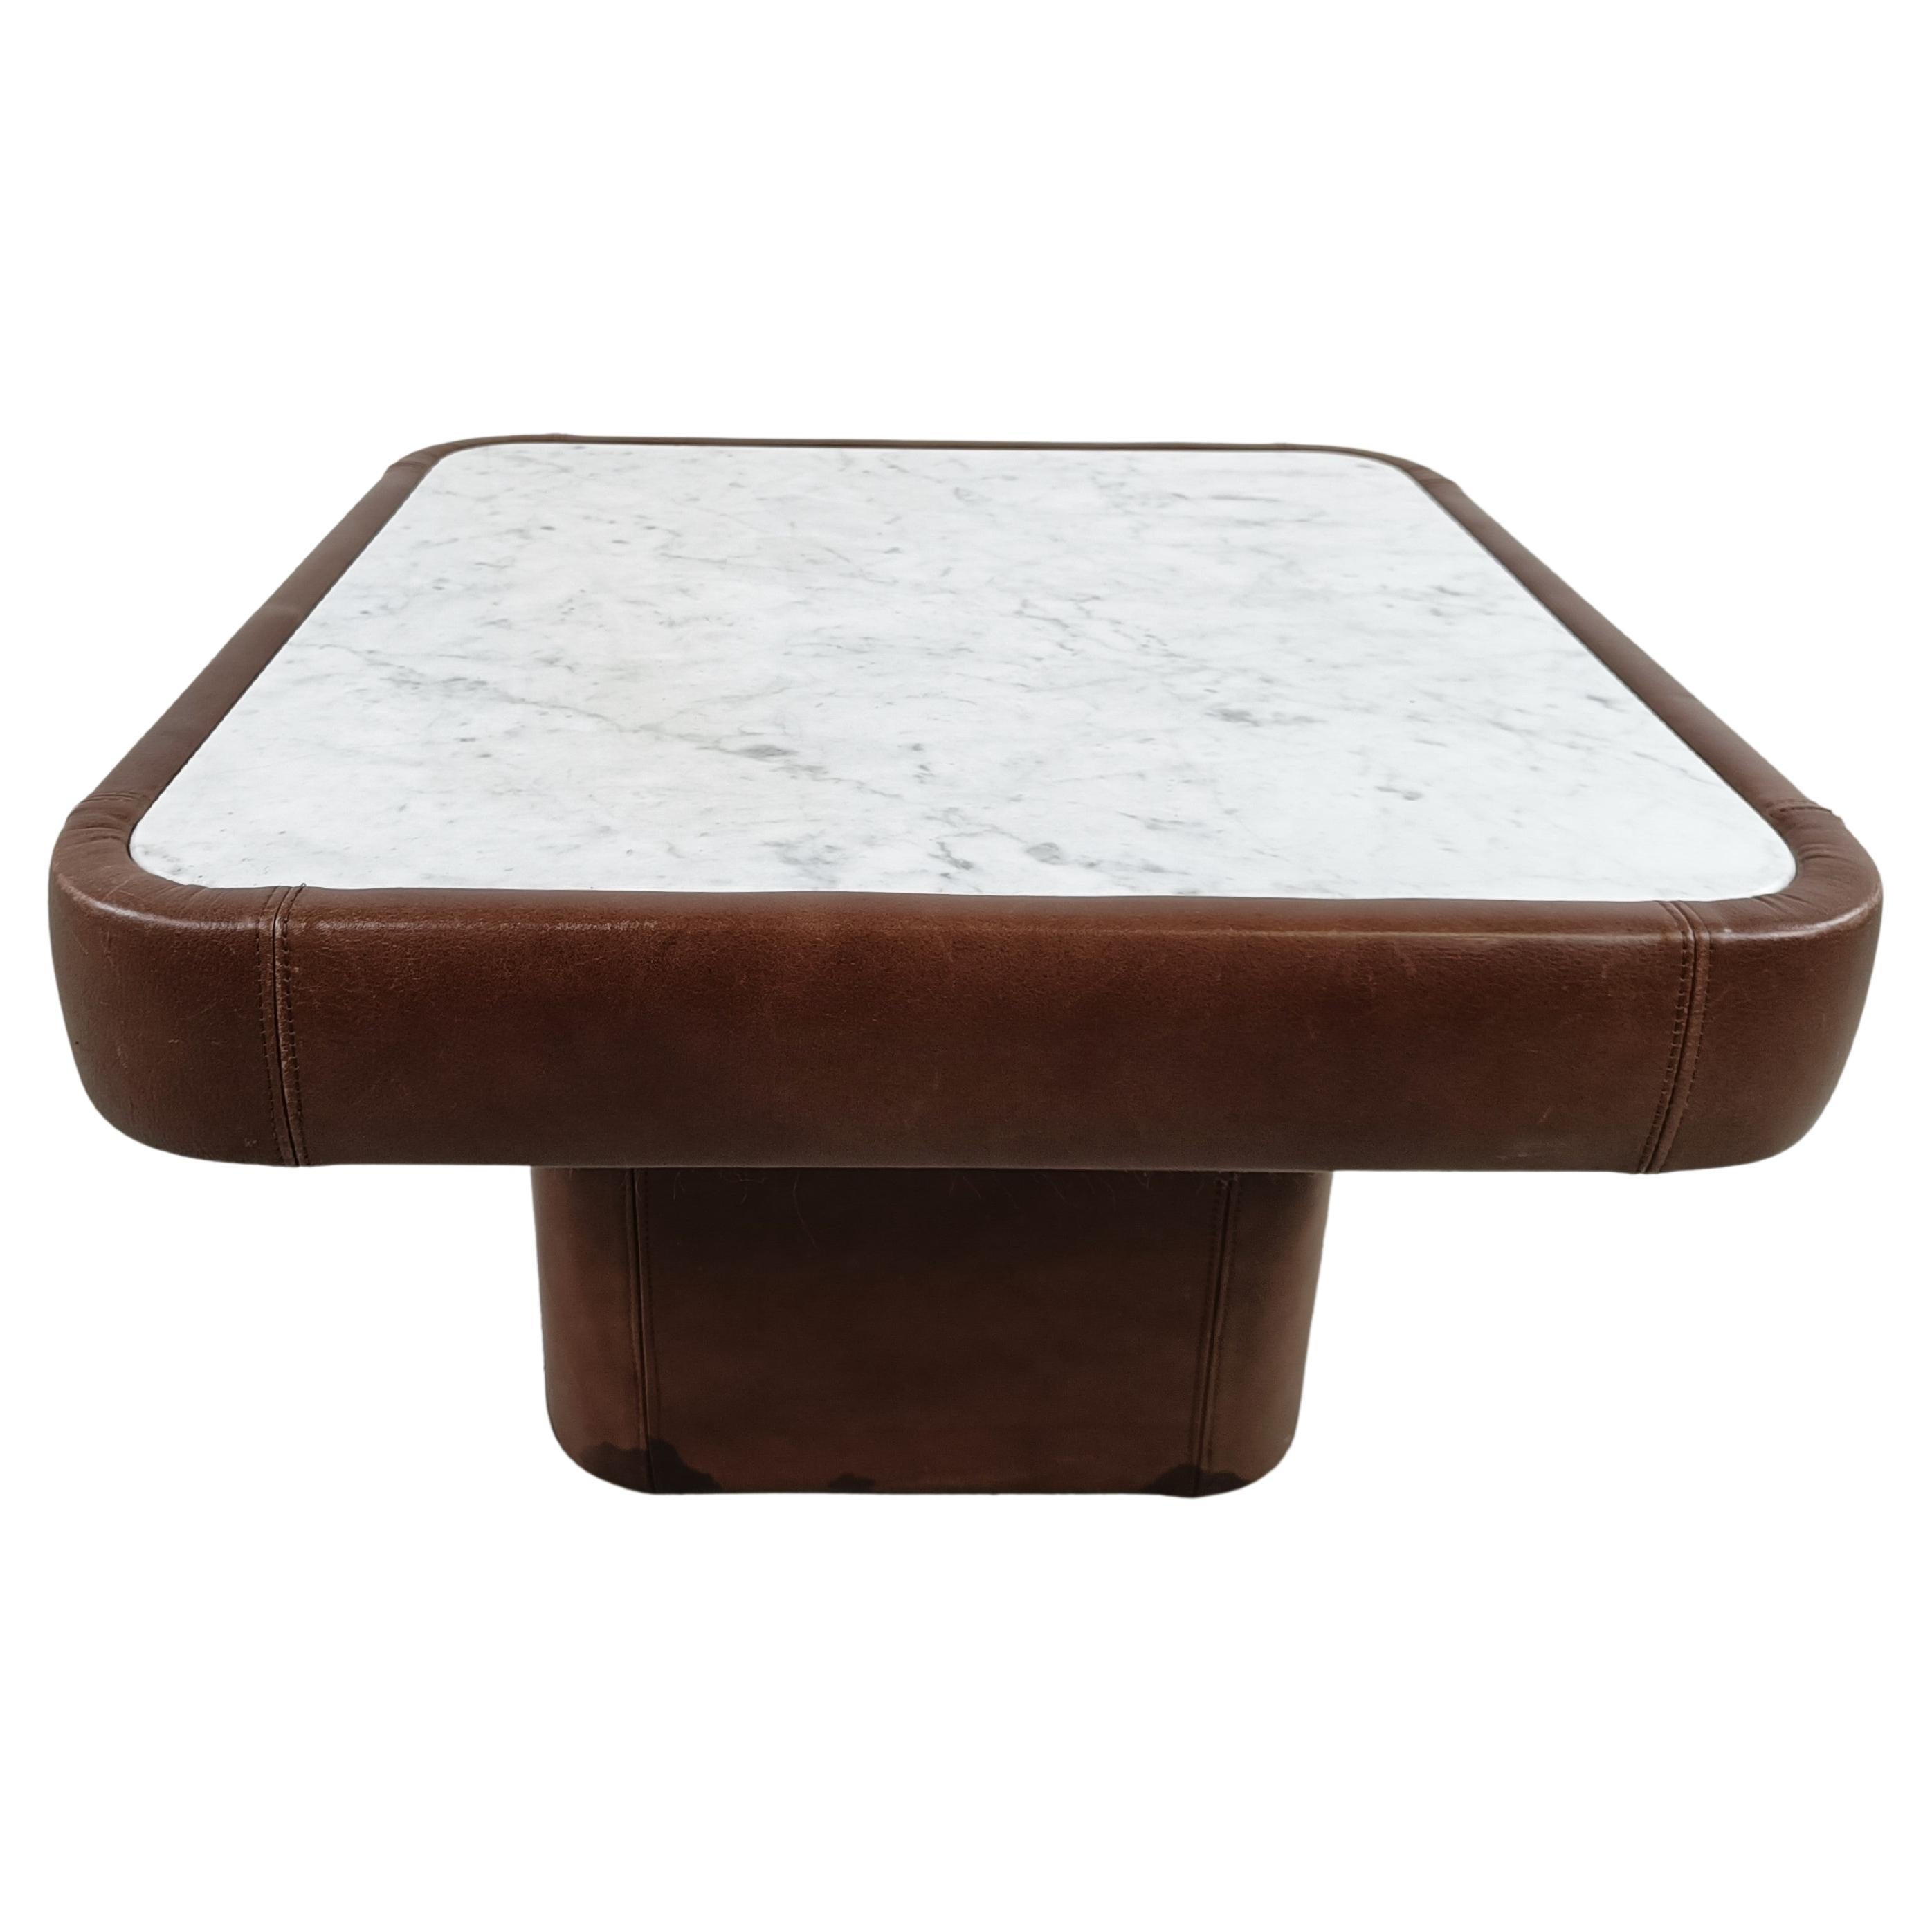 Table basse en cuir et marbre par Desede, années 1970